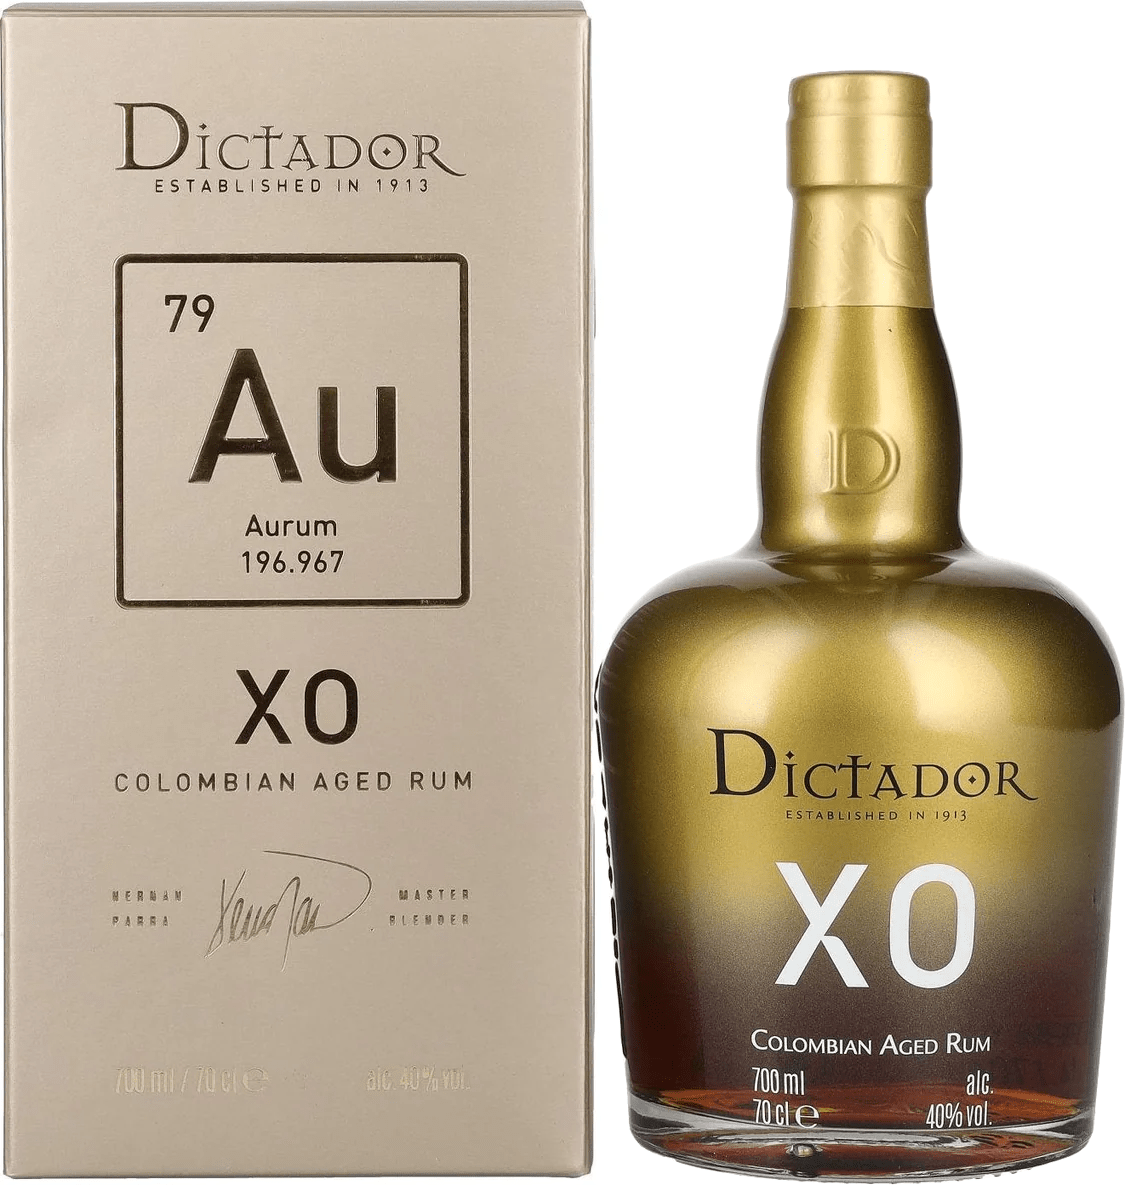 Dictador XO Aurum 40% 0,7l (darčekové balenie kazeta)